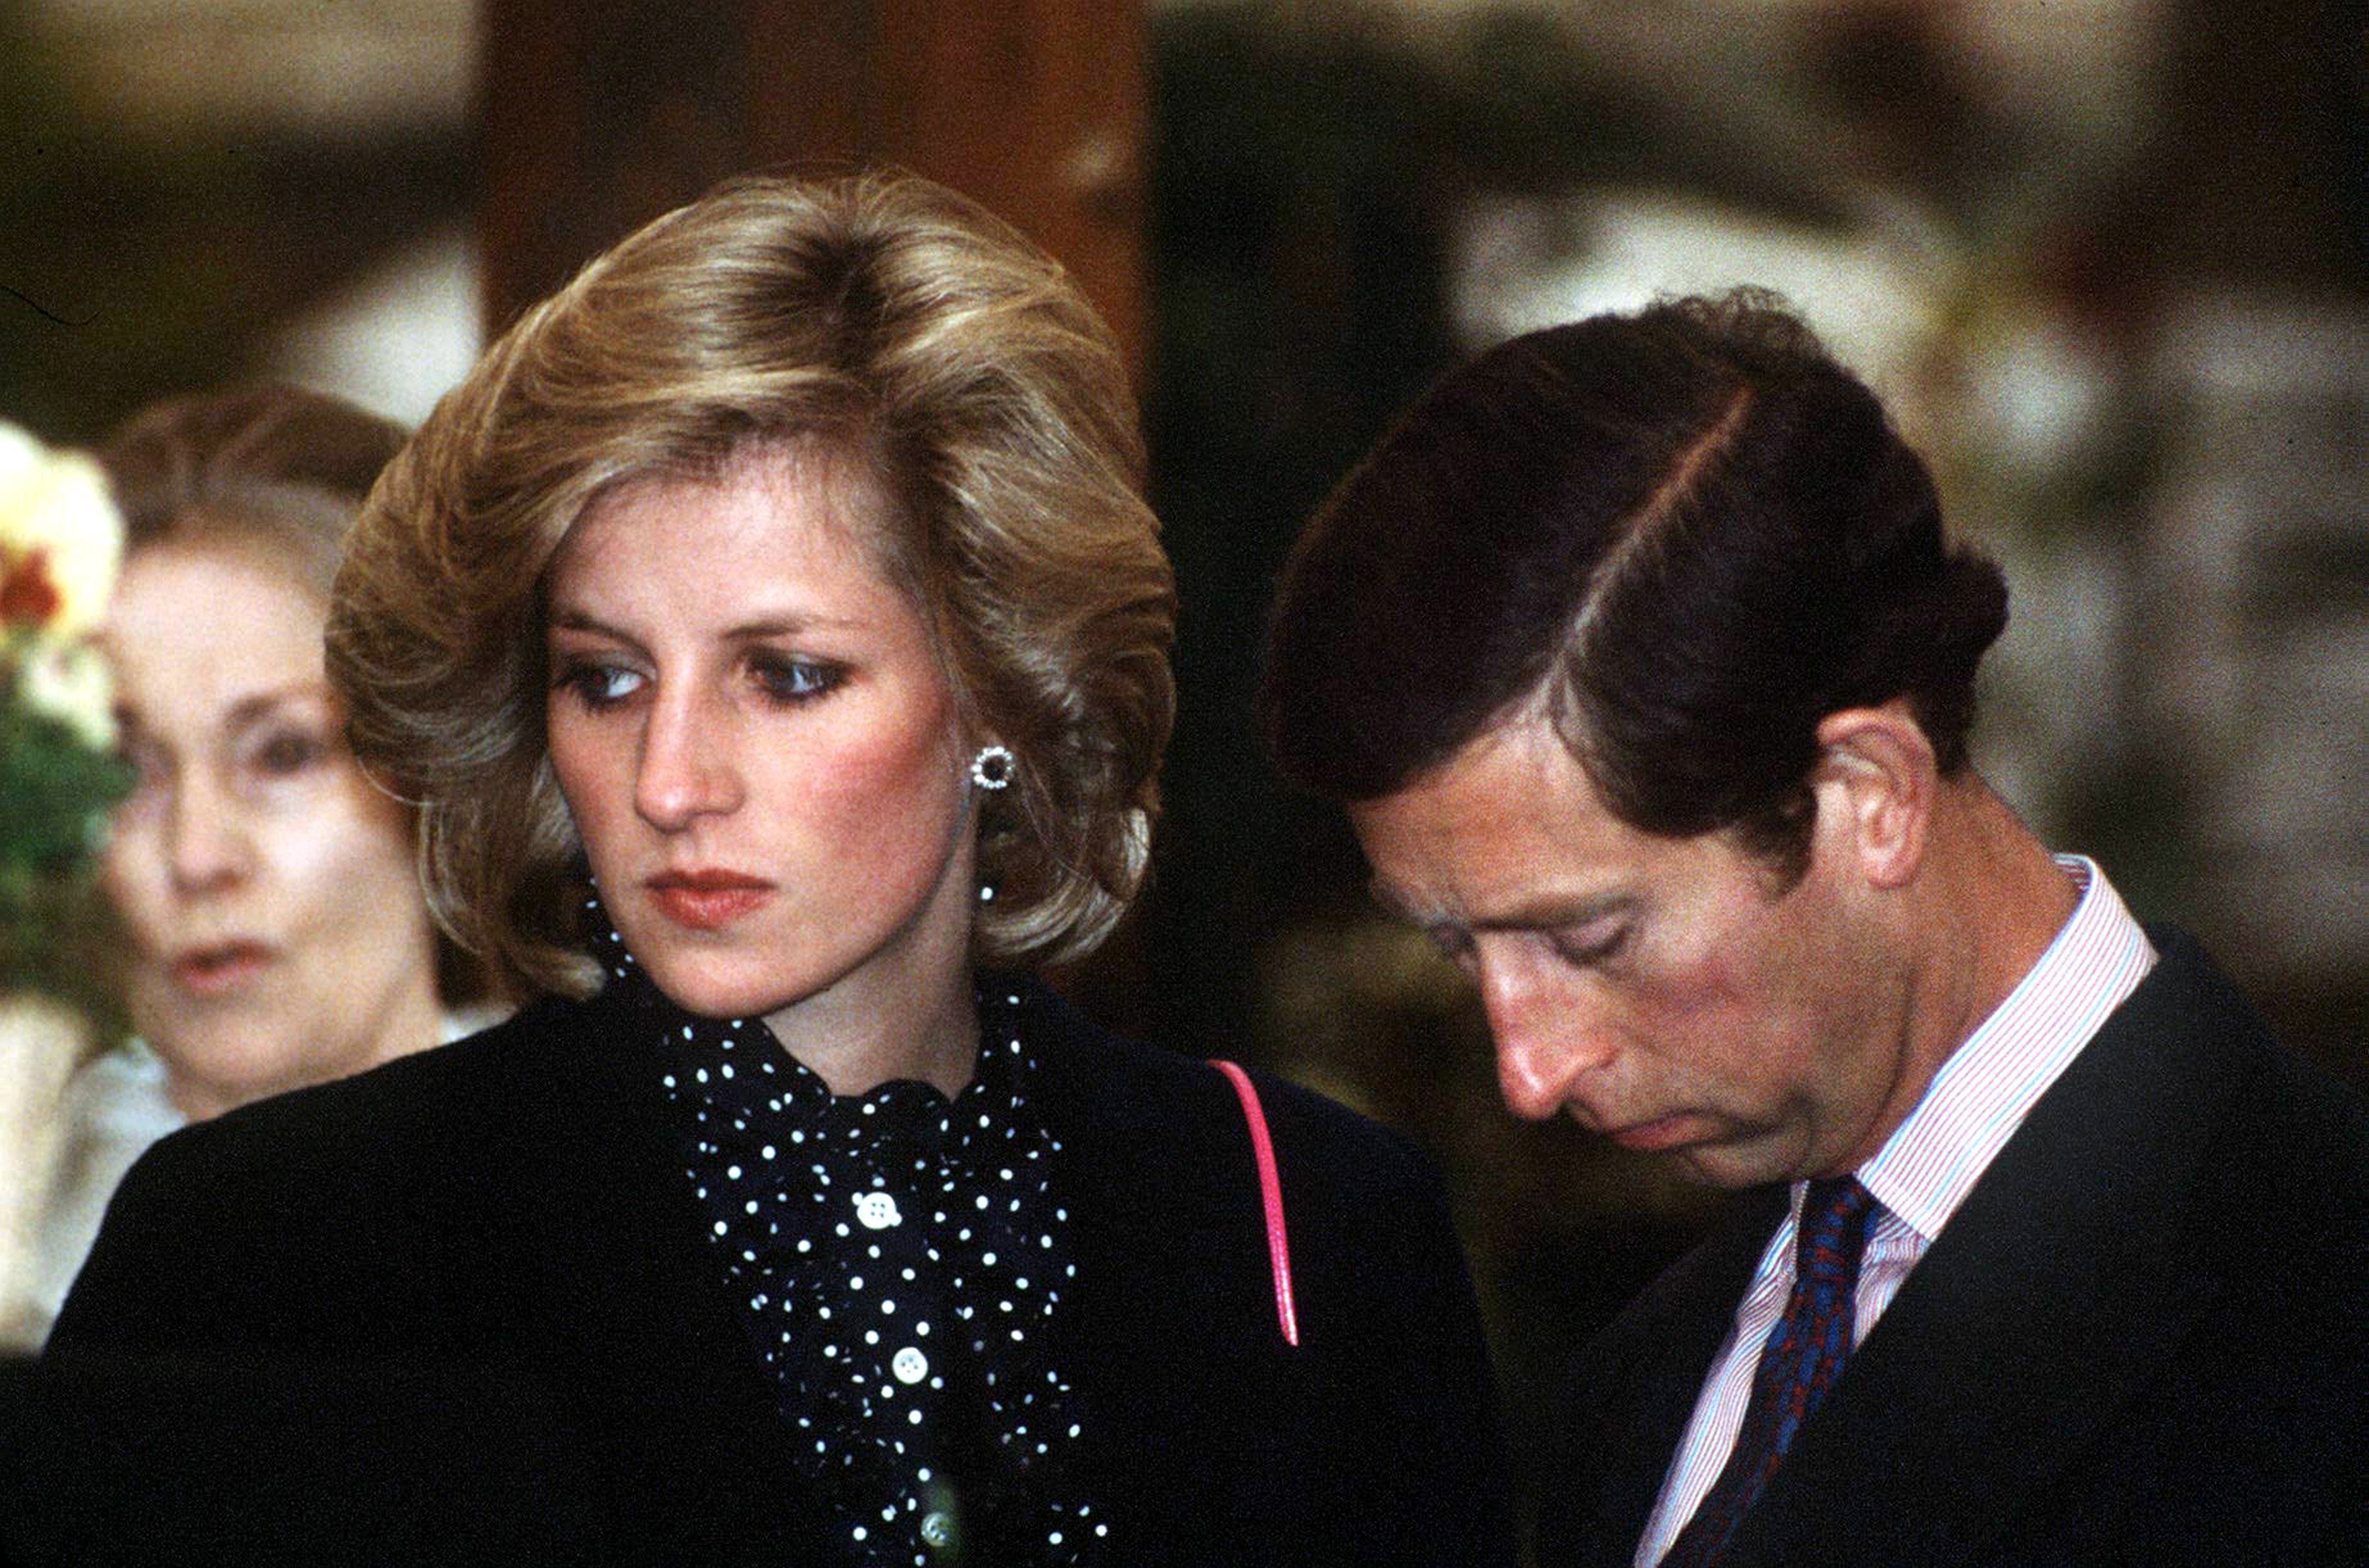 Le prince Charles et son épouse, la princesse Diana, à l'exposition florale de Chelsea en mai 1984 à Londres. / Source : Getty Images